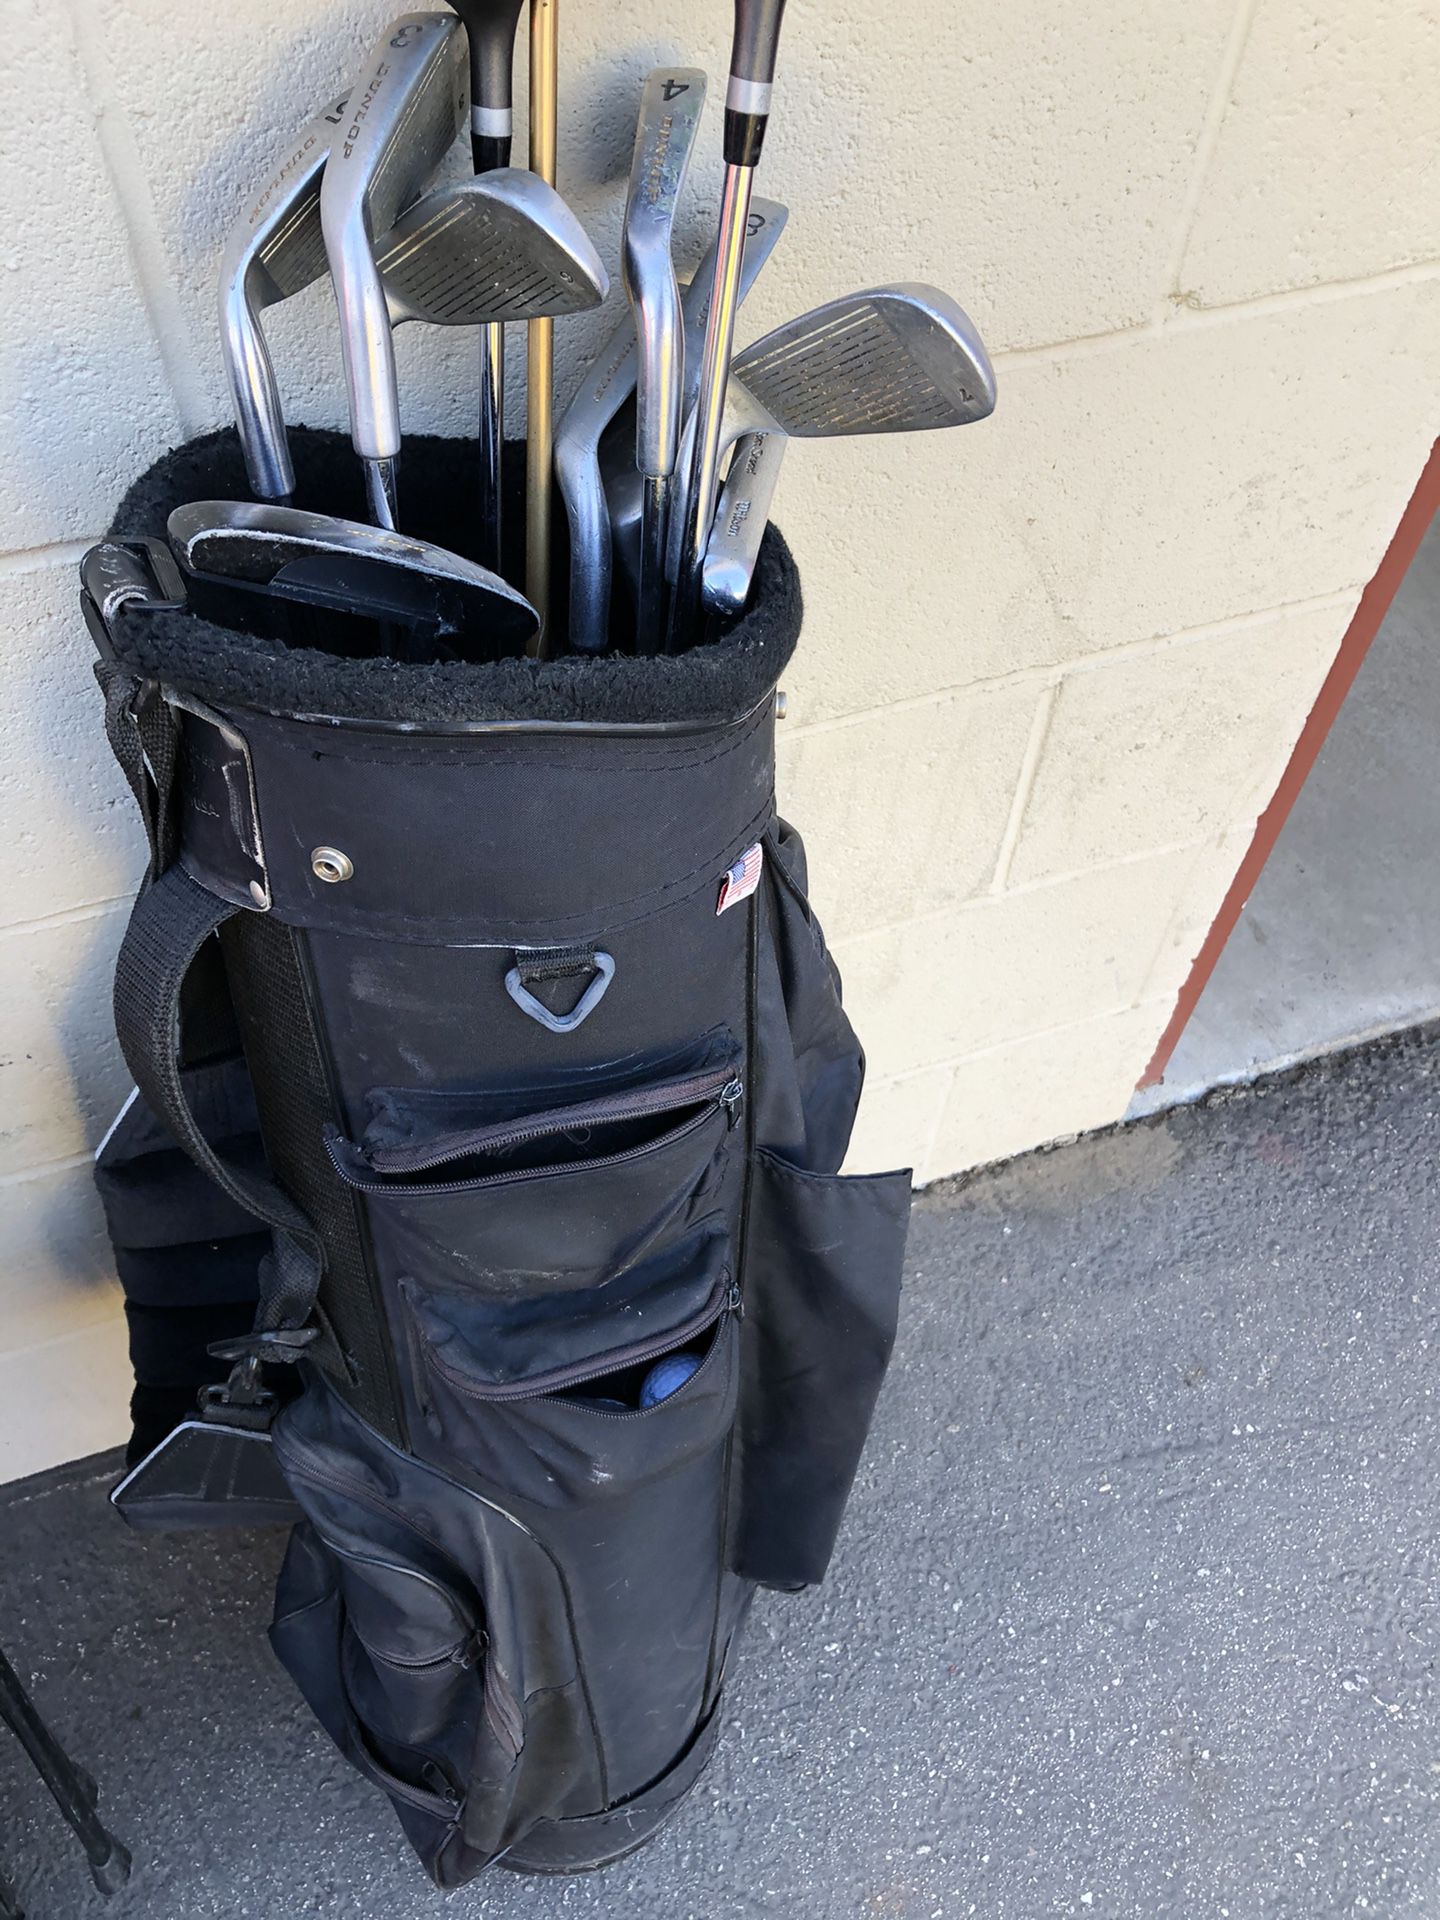 Starter golf clubs and golf bag